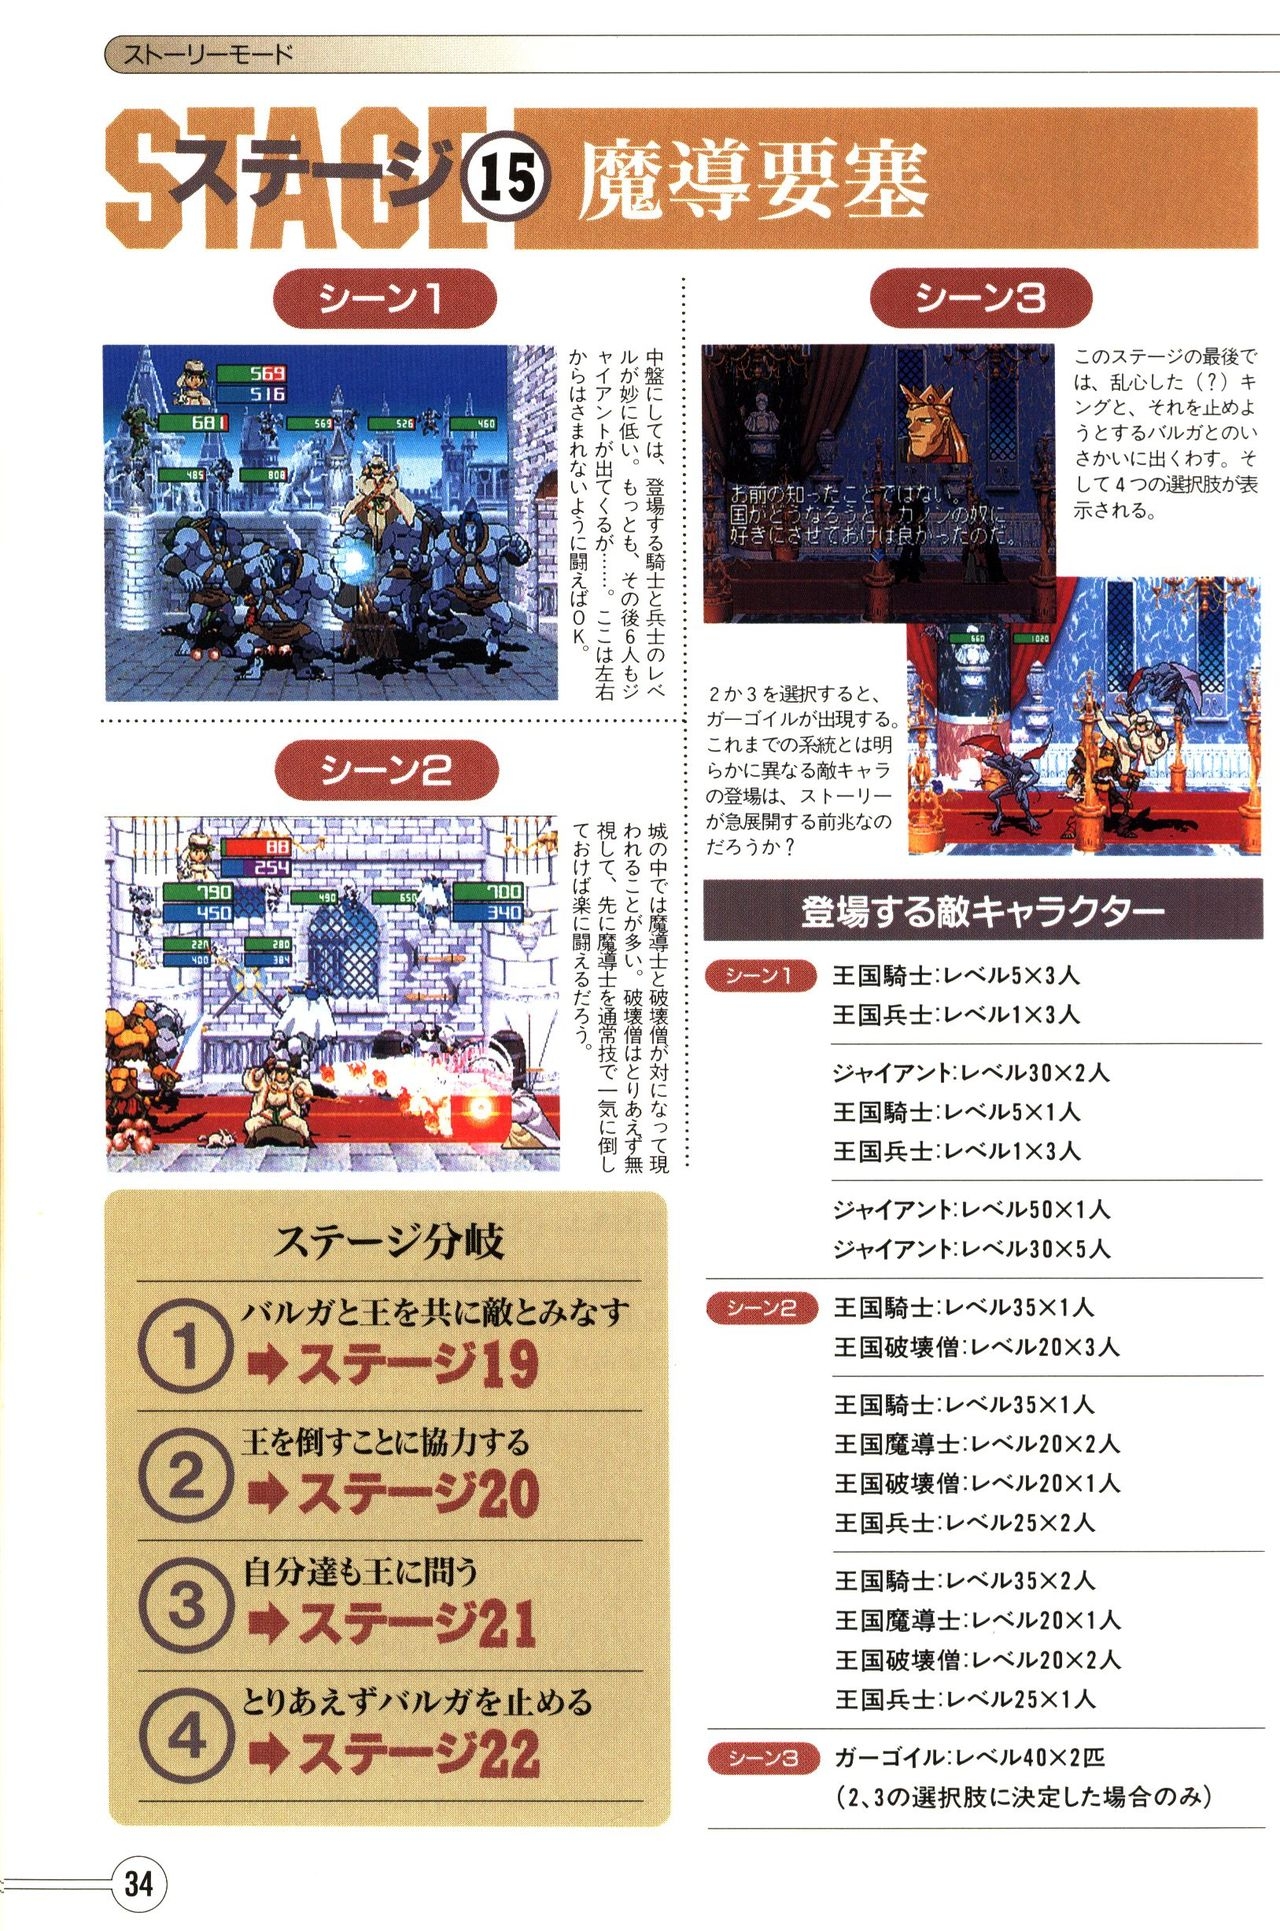 Guardian Heroes Perfect Guide (Sega Saturn magazine books) 36